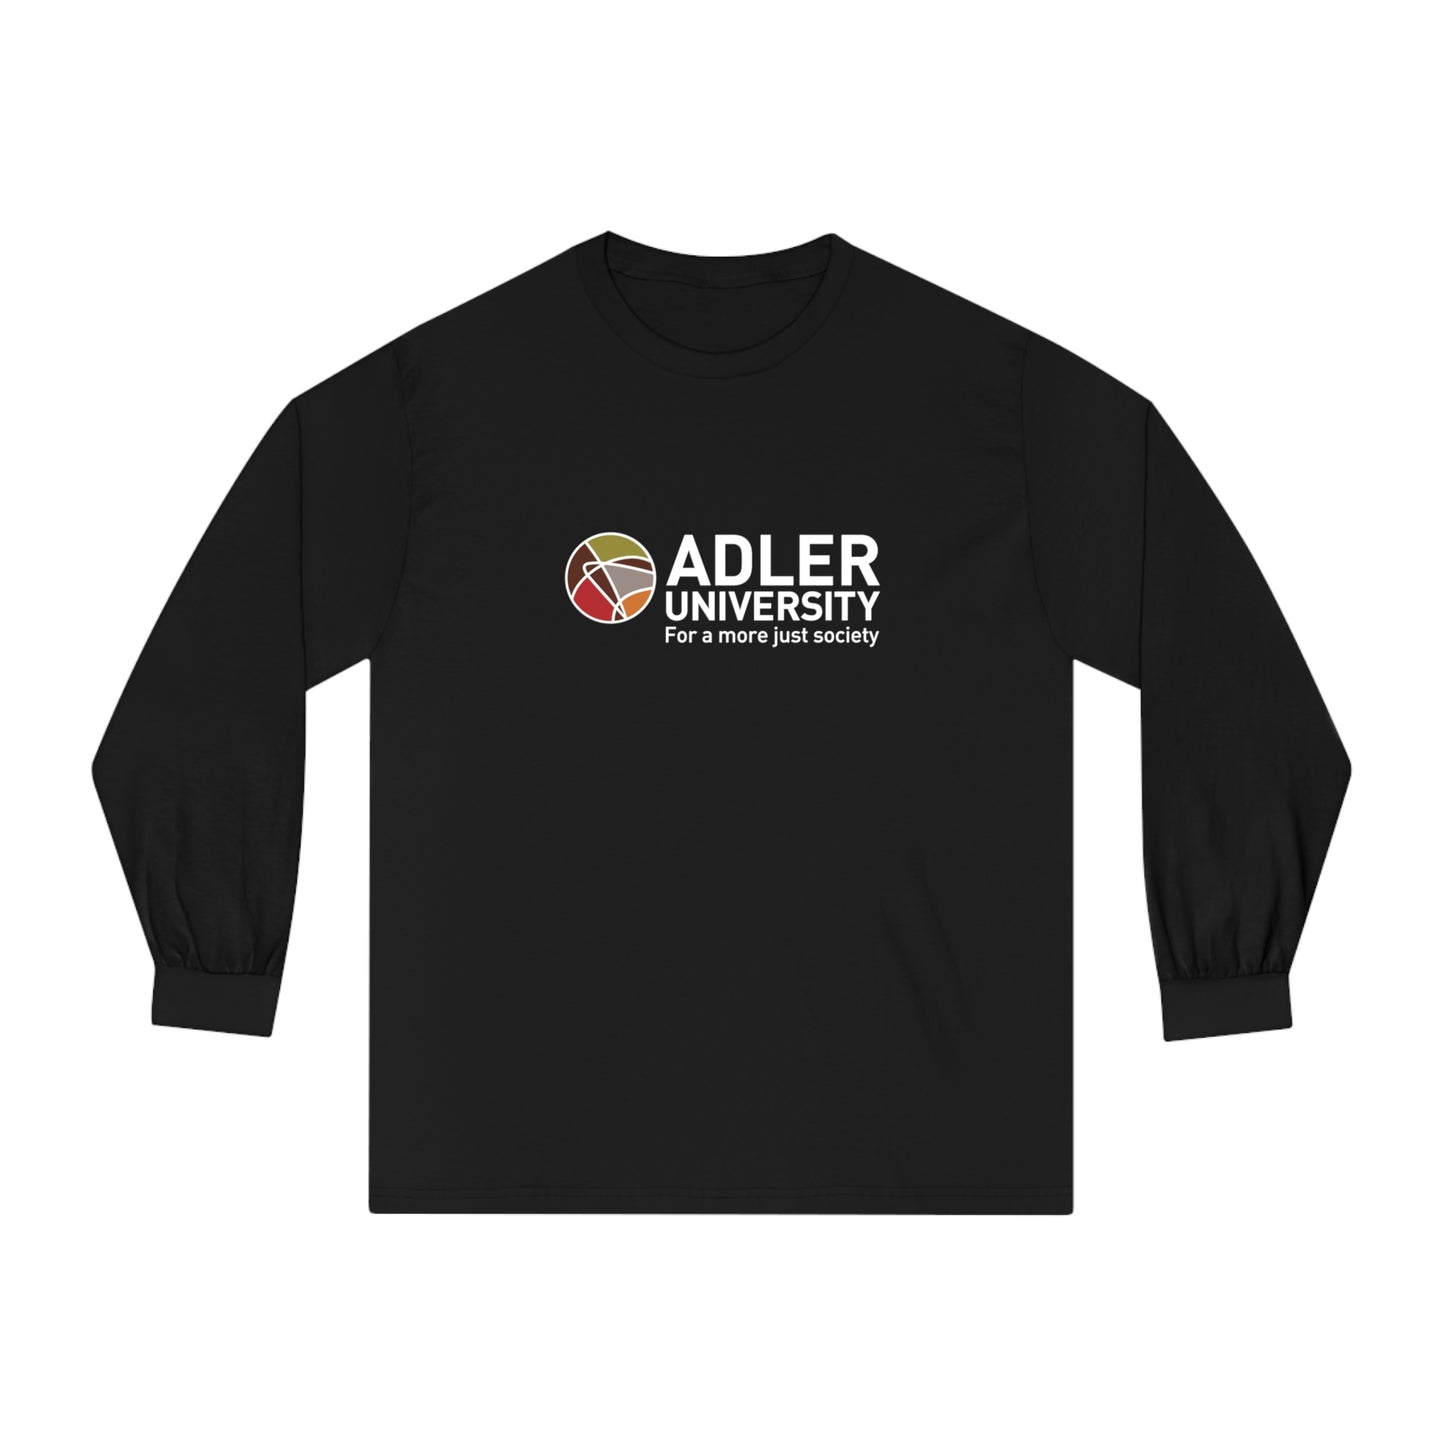 Adler University Unisex Long Sleeve T-Shirt